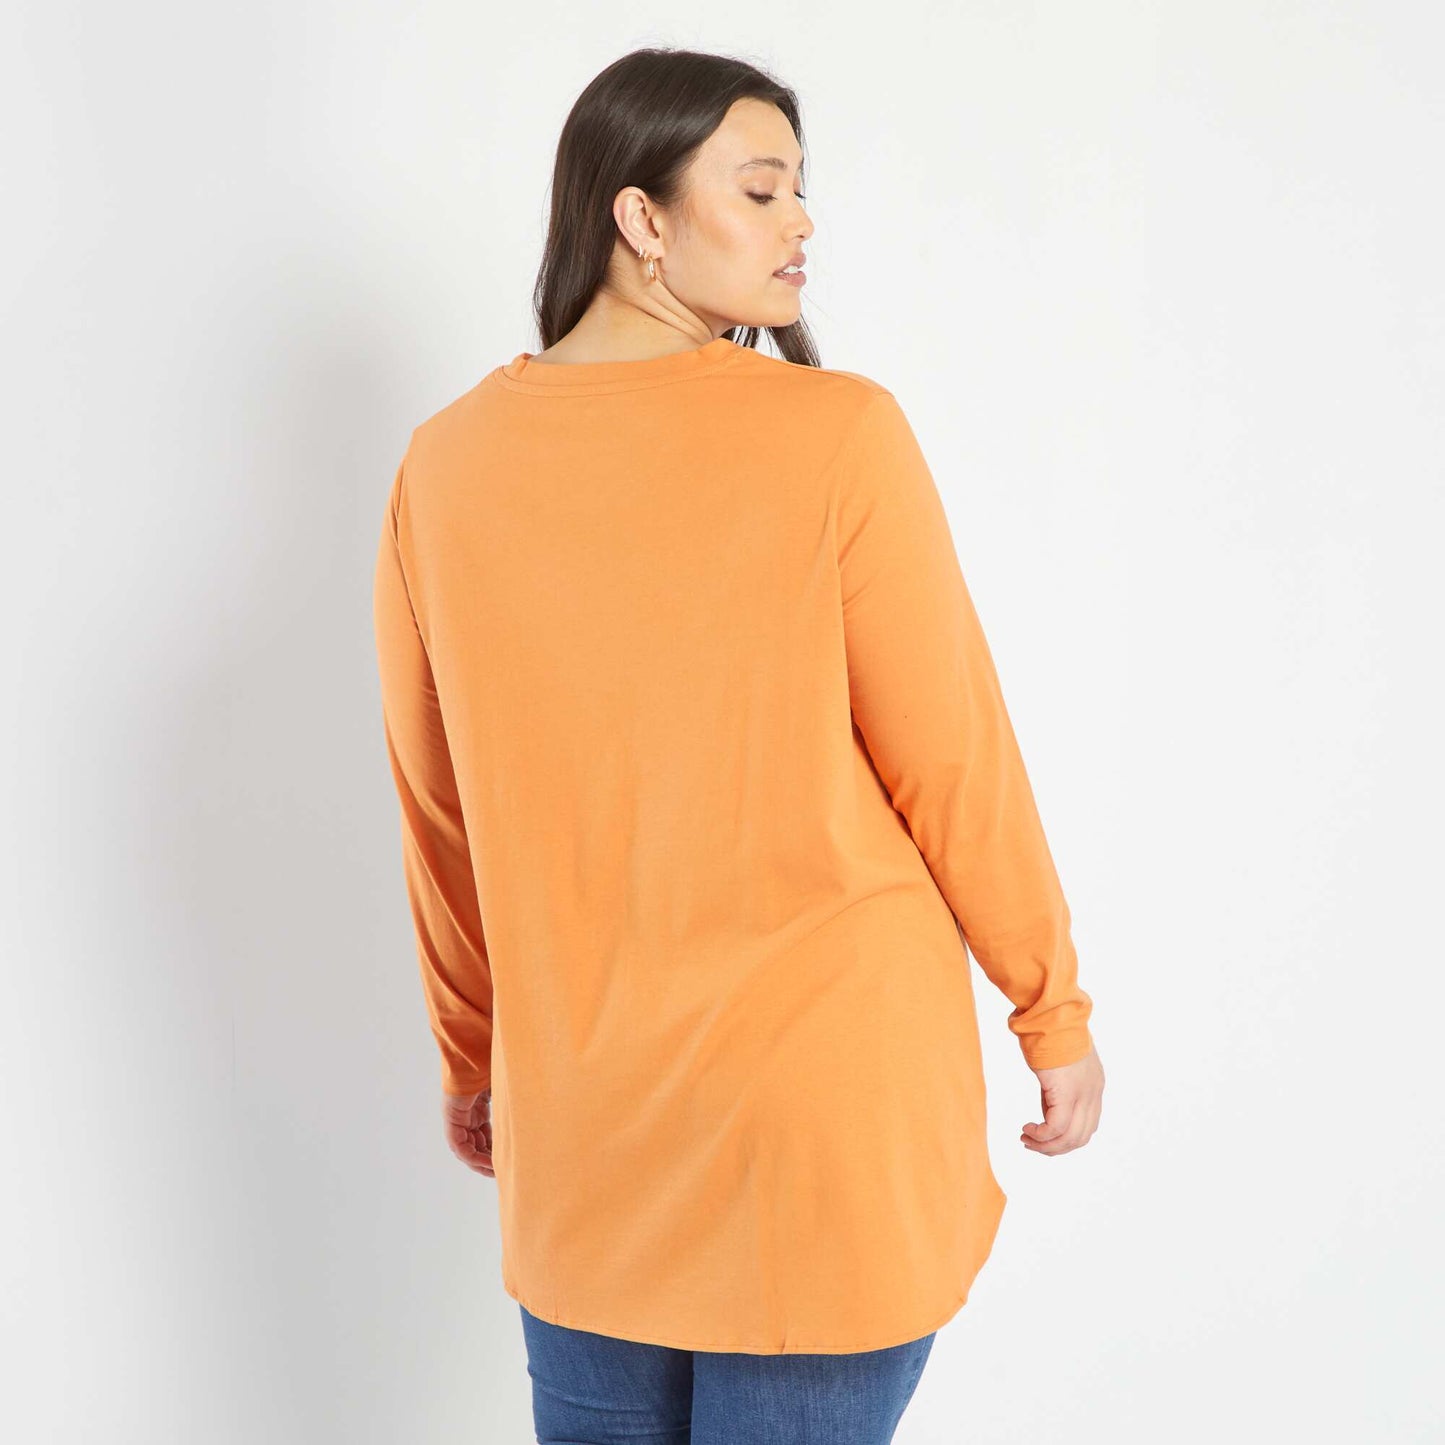 T-shirt rallongé manches longues Orange